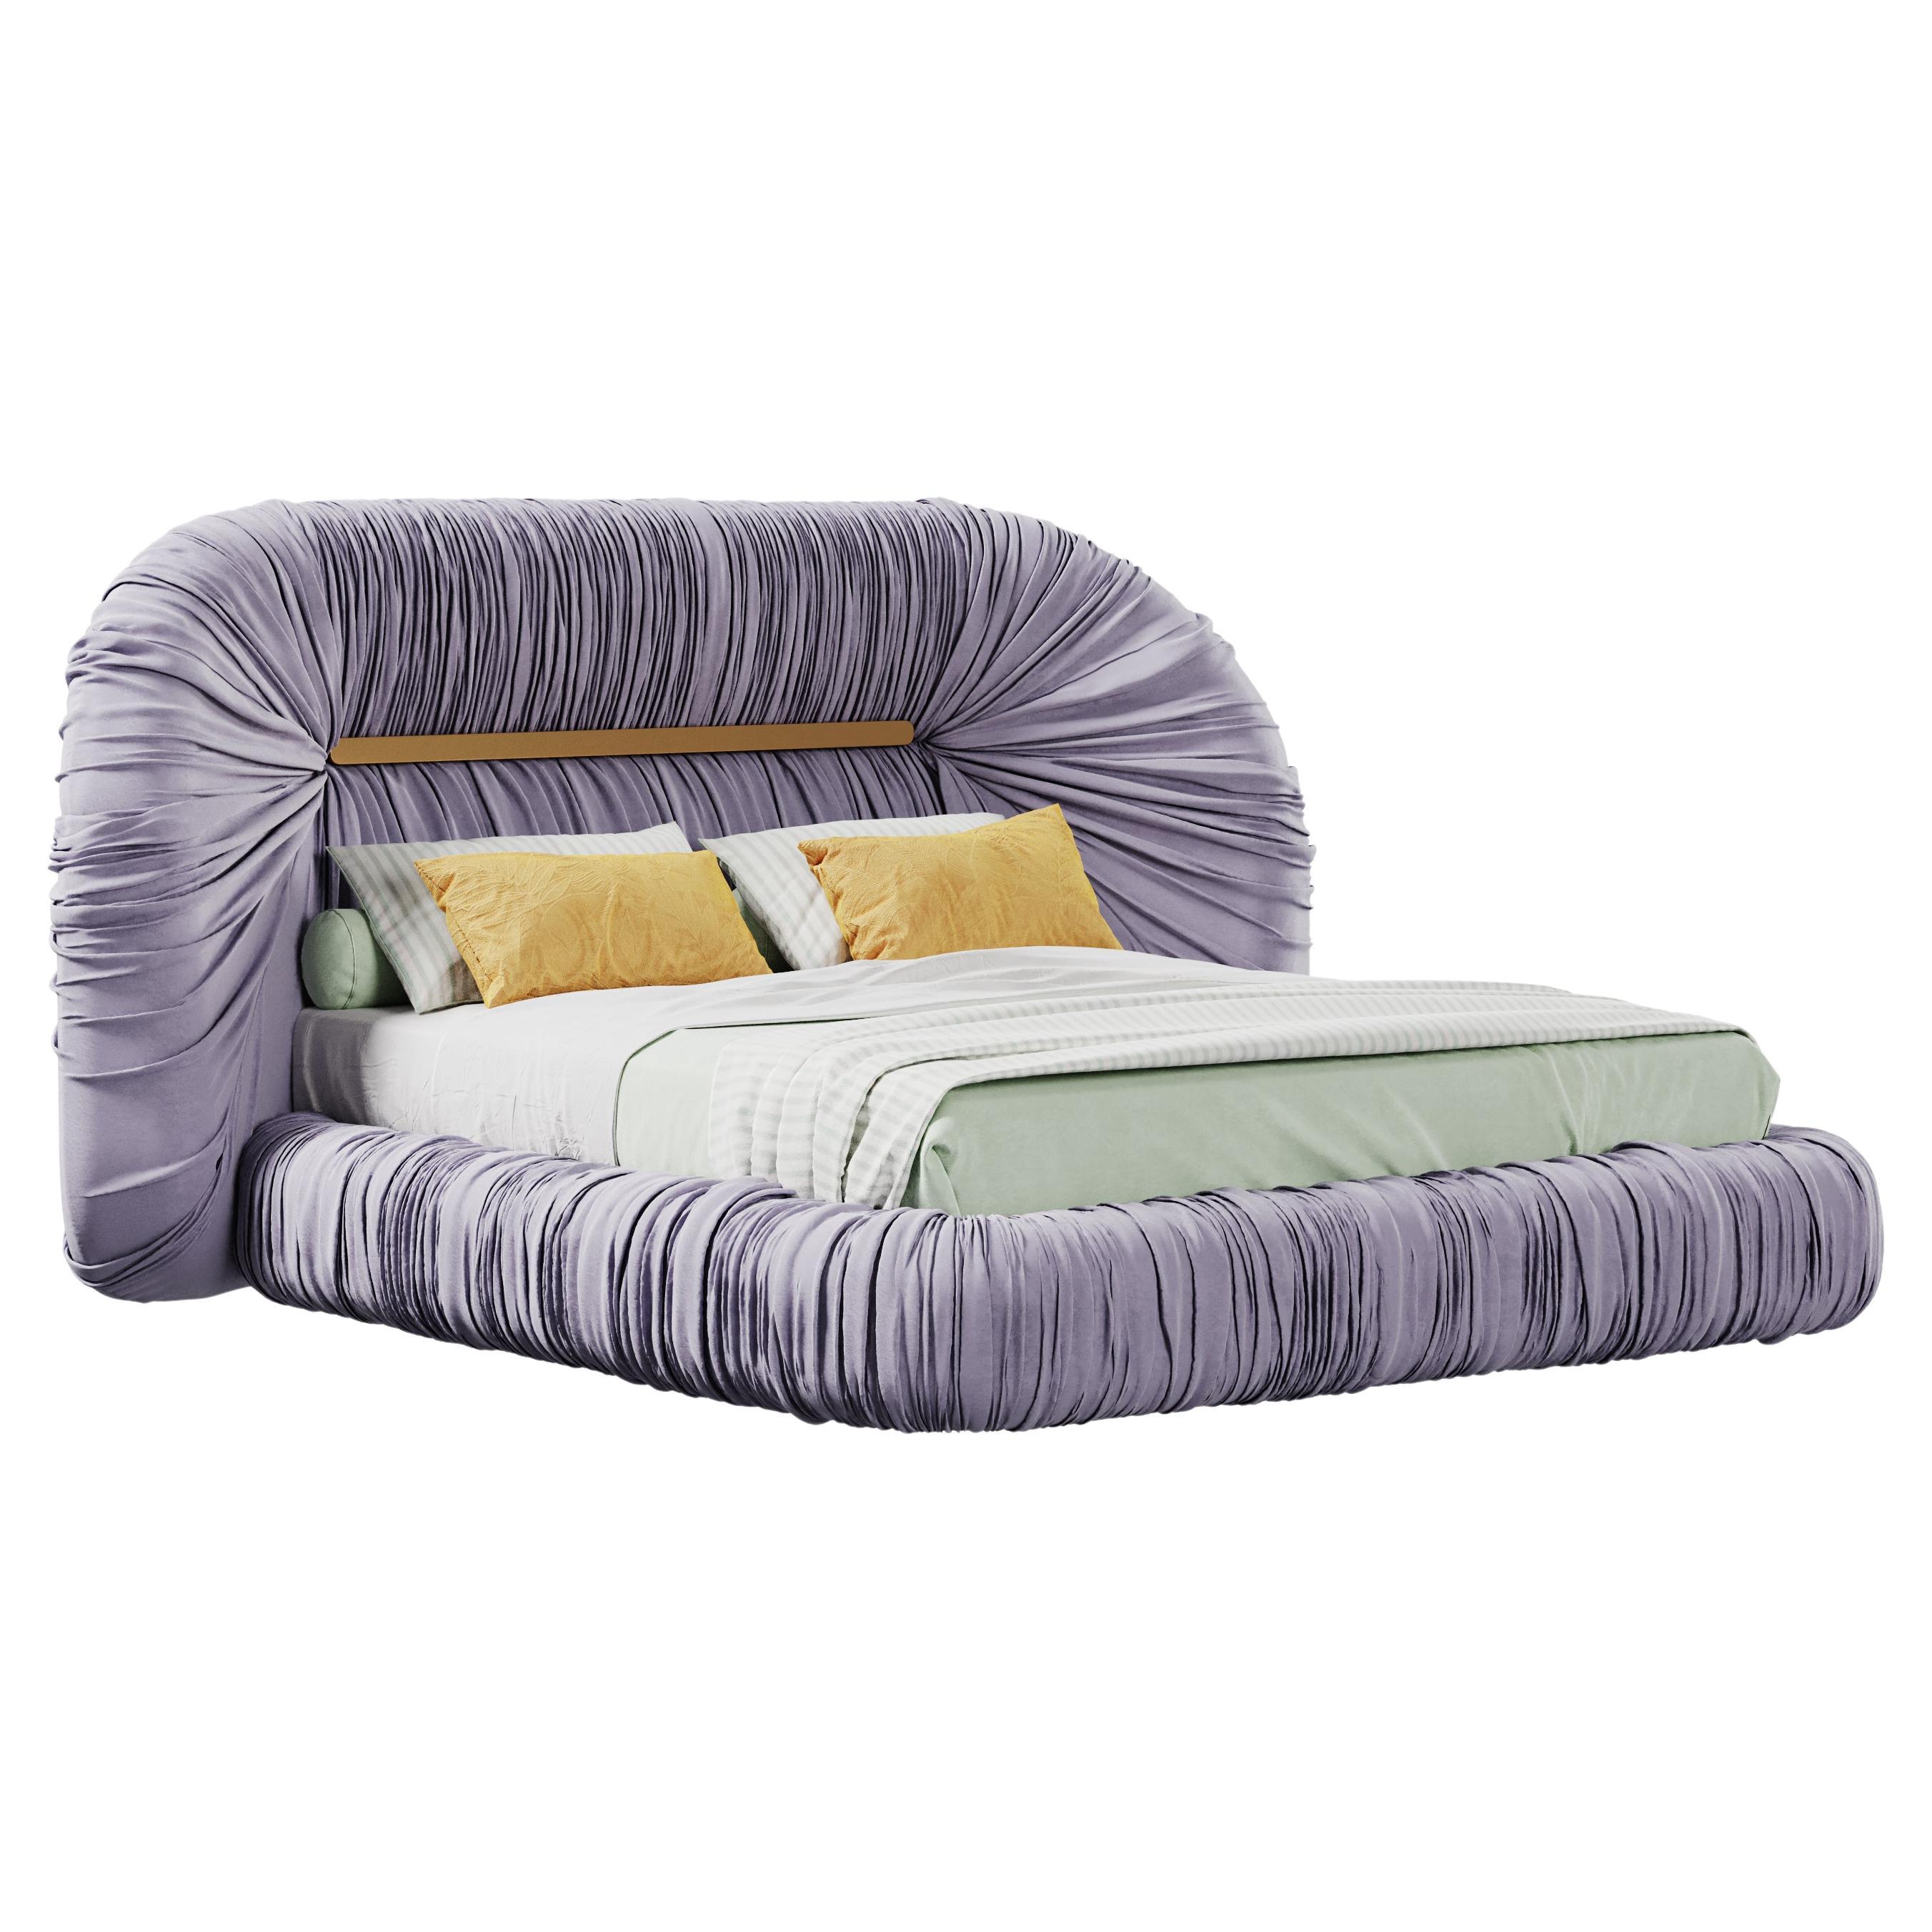 Mid-Century Modern-Inspired Tammi Bed Velvet by Ottiu For Sale